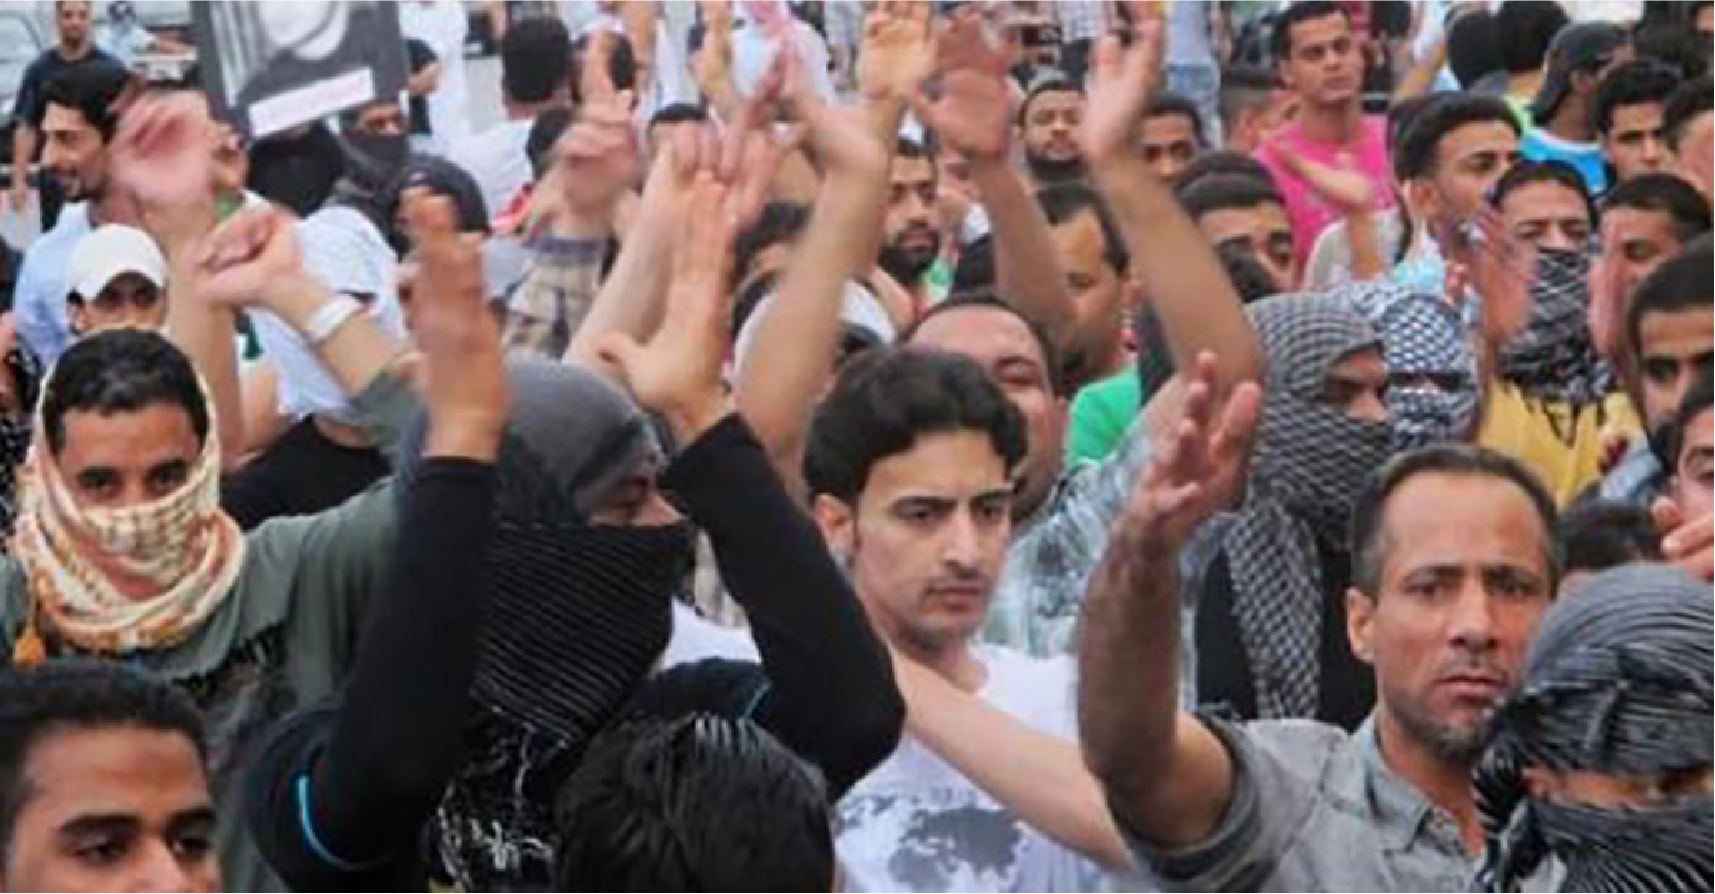 صورة شيعيون يطالبون بحقوق في السعودية بدل أن يشكروا السلطات على تركهم أحياء